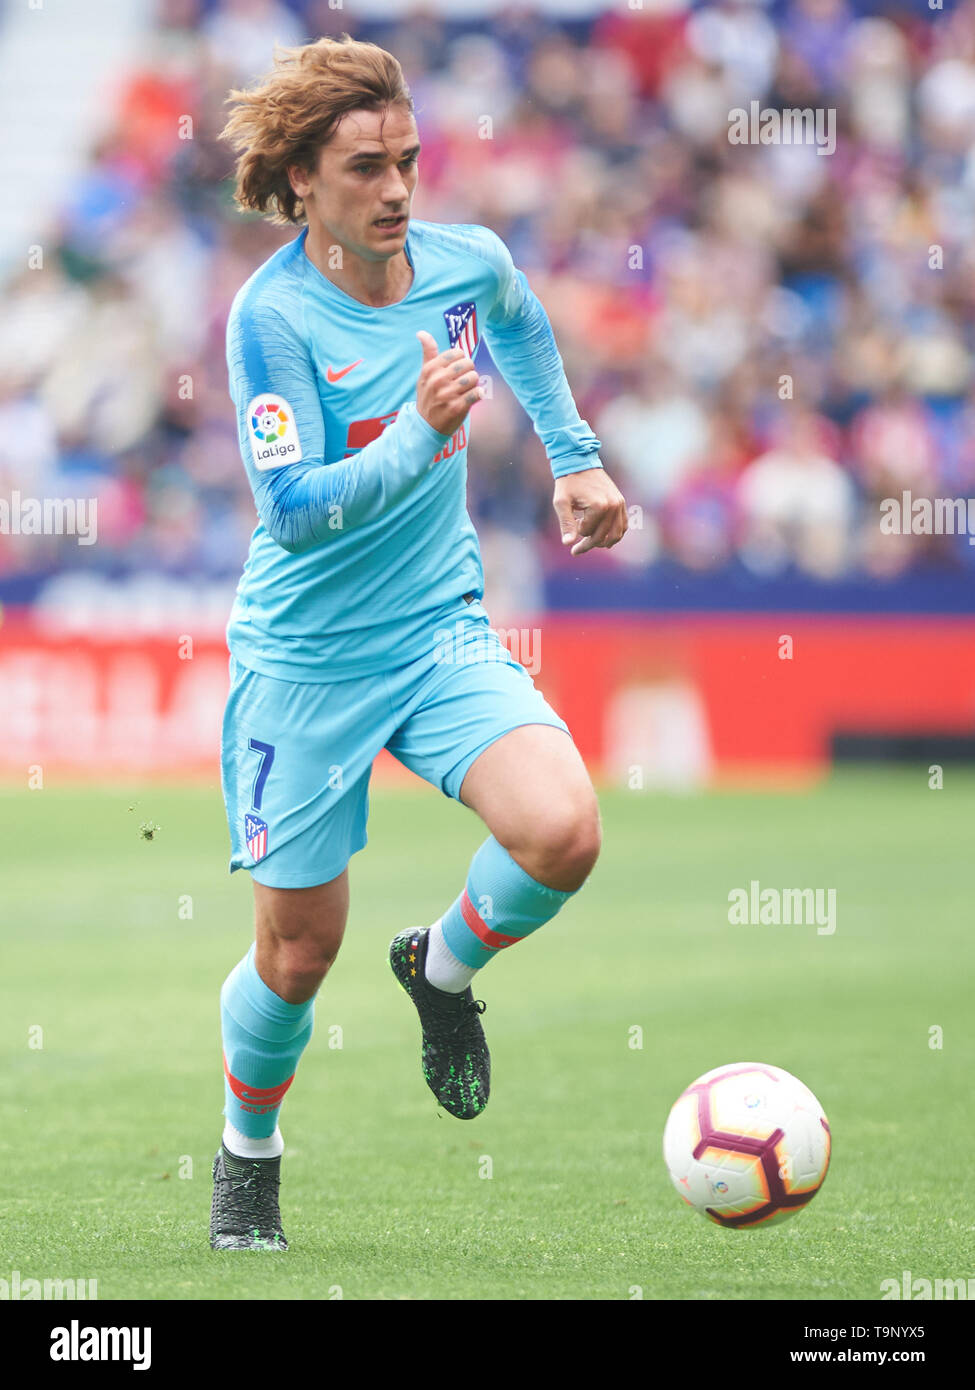 Valence, 18-05-2019. 2018 LaLiga/ 2019, date 38. Levante-Atletico. Antoine Griezmann de l'Atletico de Madrid pendant le jeu Levante-Atletico. Banque D'Images